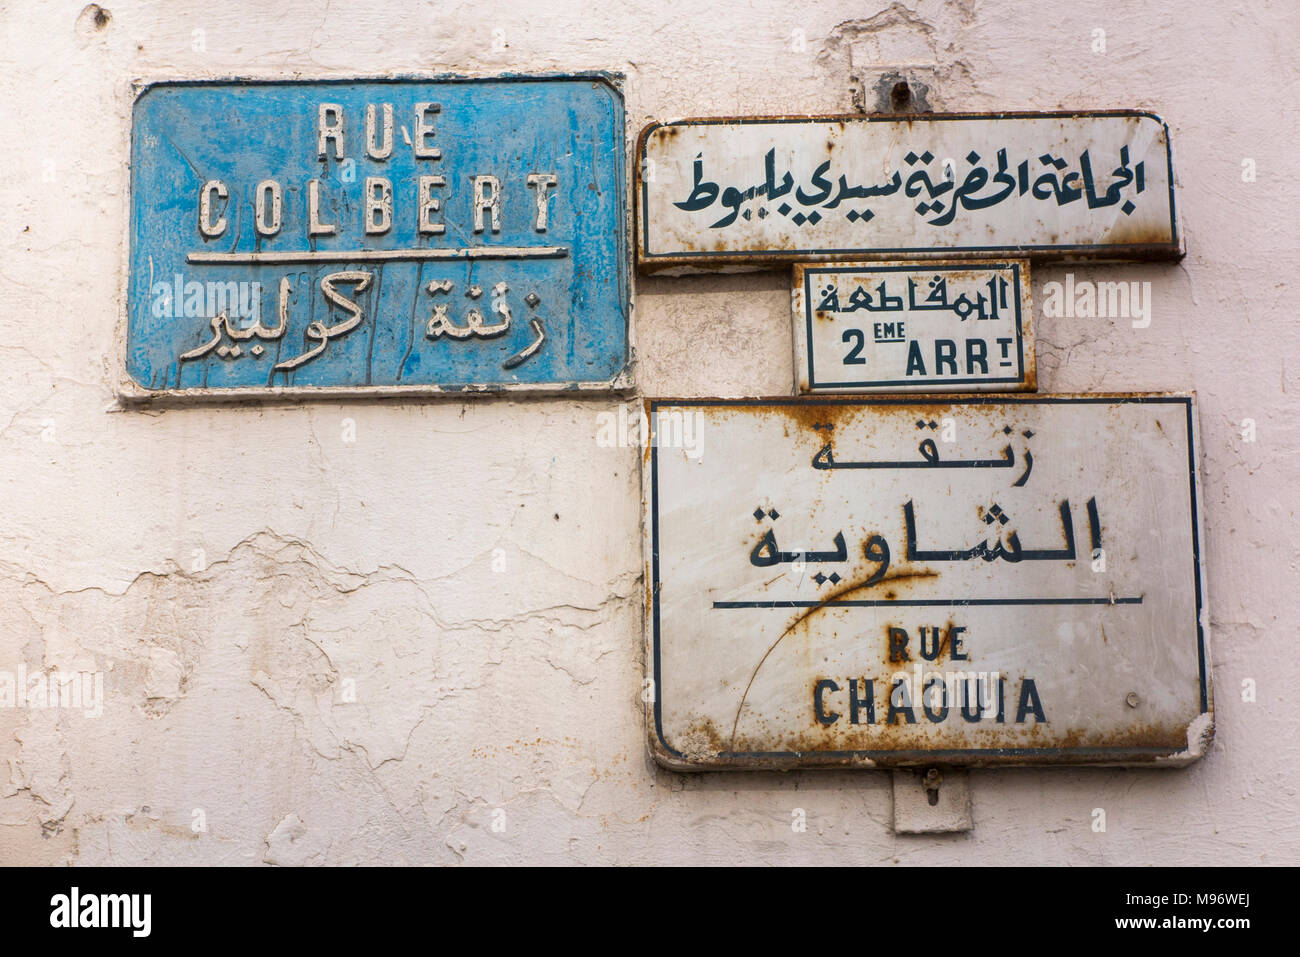 Marokko, Casablanca, Rue Colbert und Rue Chaouia Straßennamenschilder in Französisch und Arabisch Stockfoto